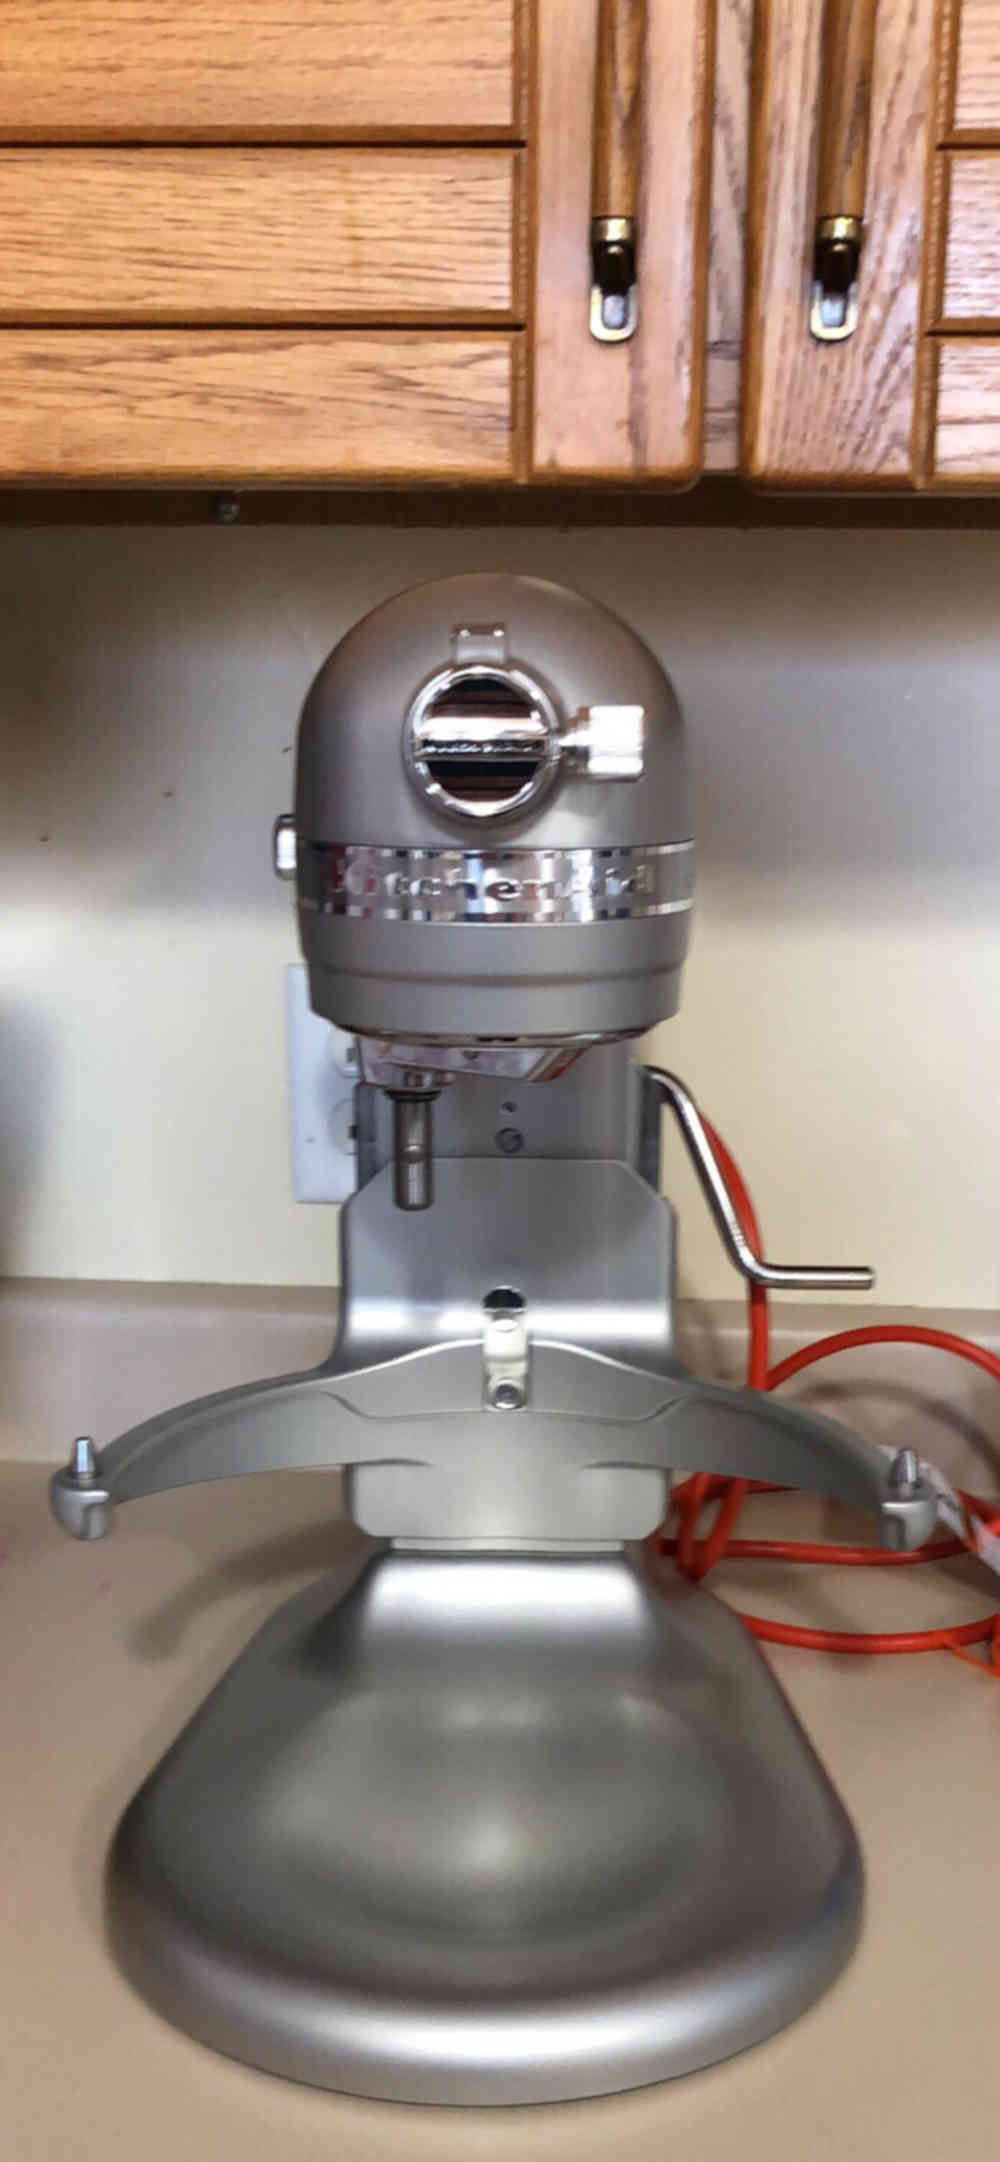 KitchenAid Commmercial 8qt Mixer KSM8990 - Prep Equipment - Pizza Making  Forum